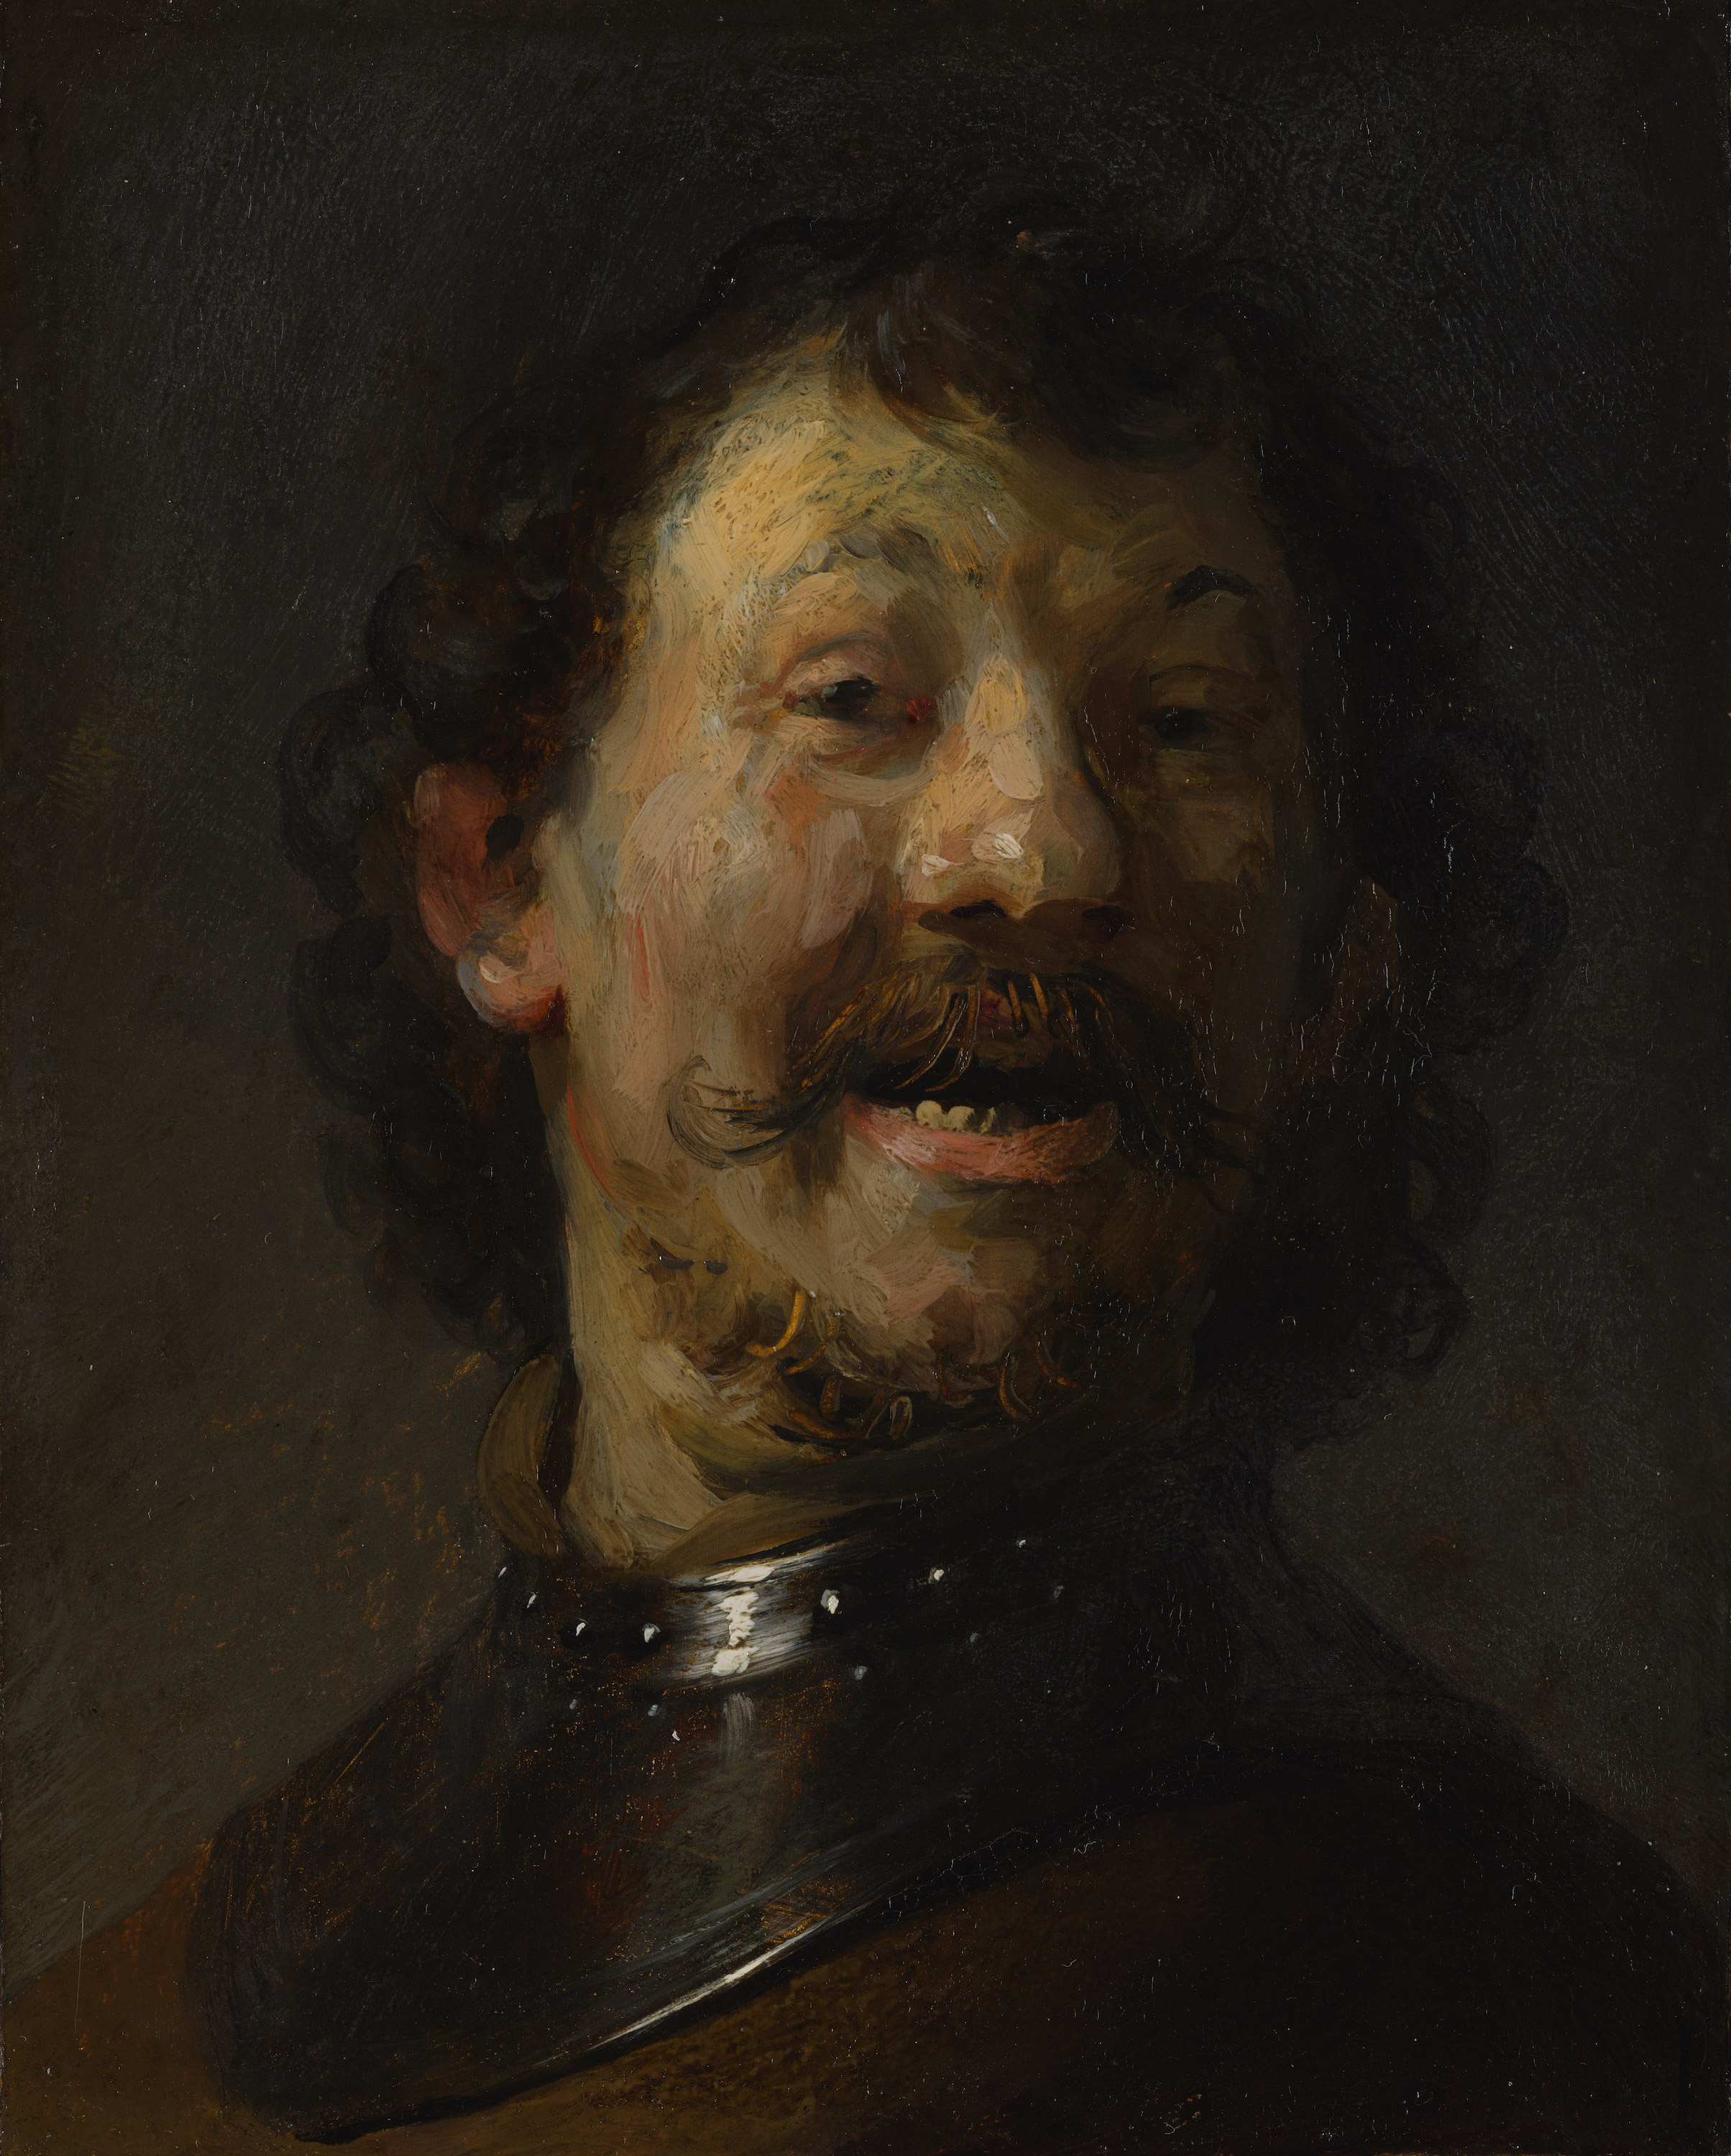 Der Lachende Mann by Rembrandt van Rijn - ca. 1629 - 1630 - 15,3 x 12,2 cm Mauritshuis